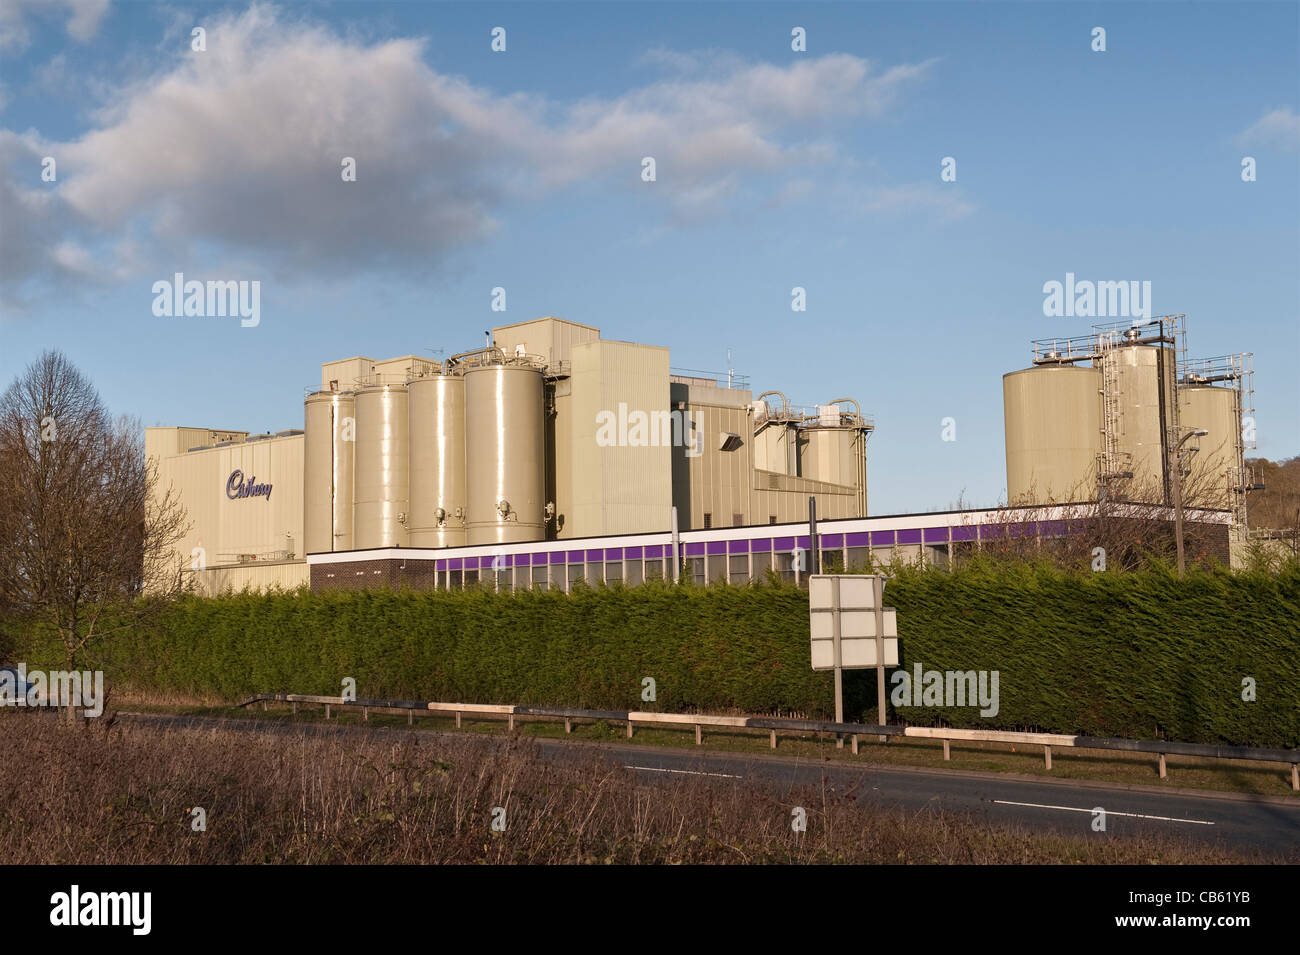 Die Schokoladenfabrik von Cadbury in Marlbrook, Leominster, Herefordshire, Großbritannien. Seit 2010 im Besitz von Mondelez International (ursprünglich Kraft Foods) Stockfoto